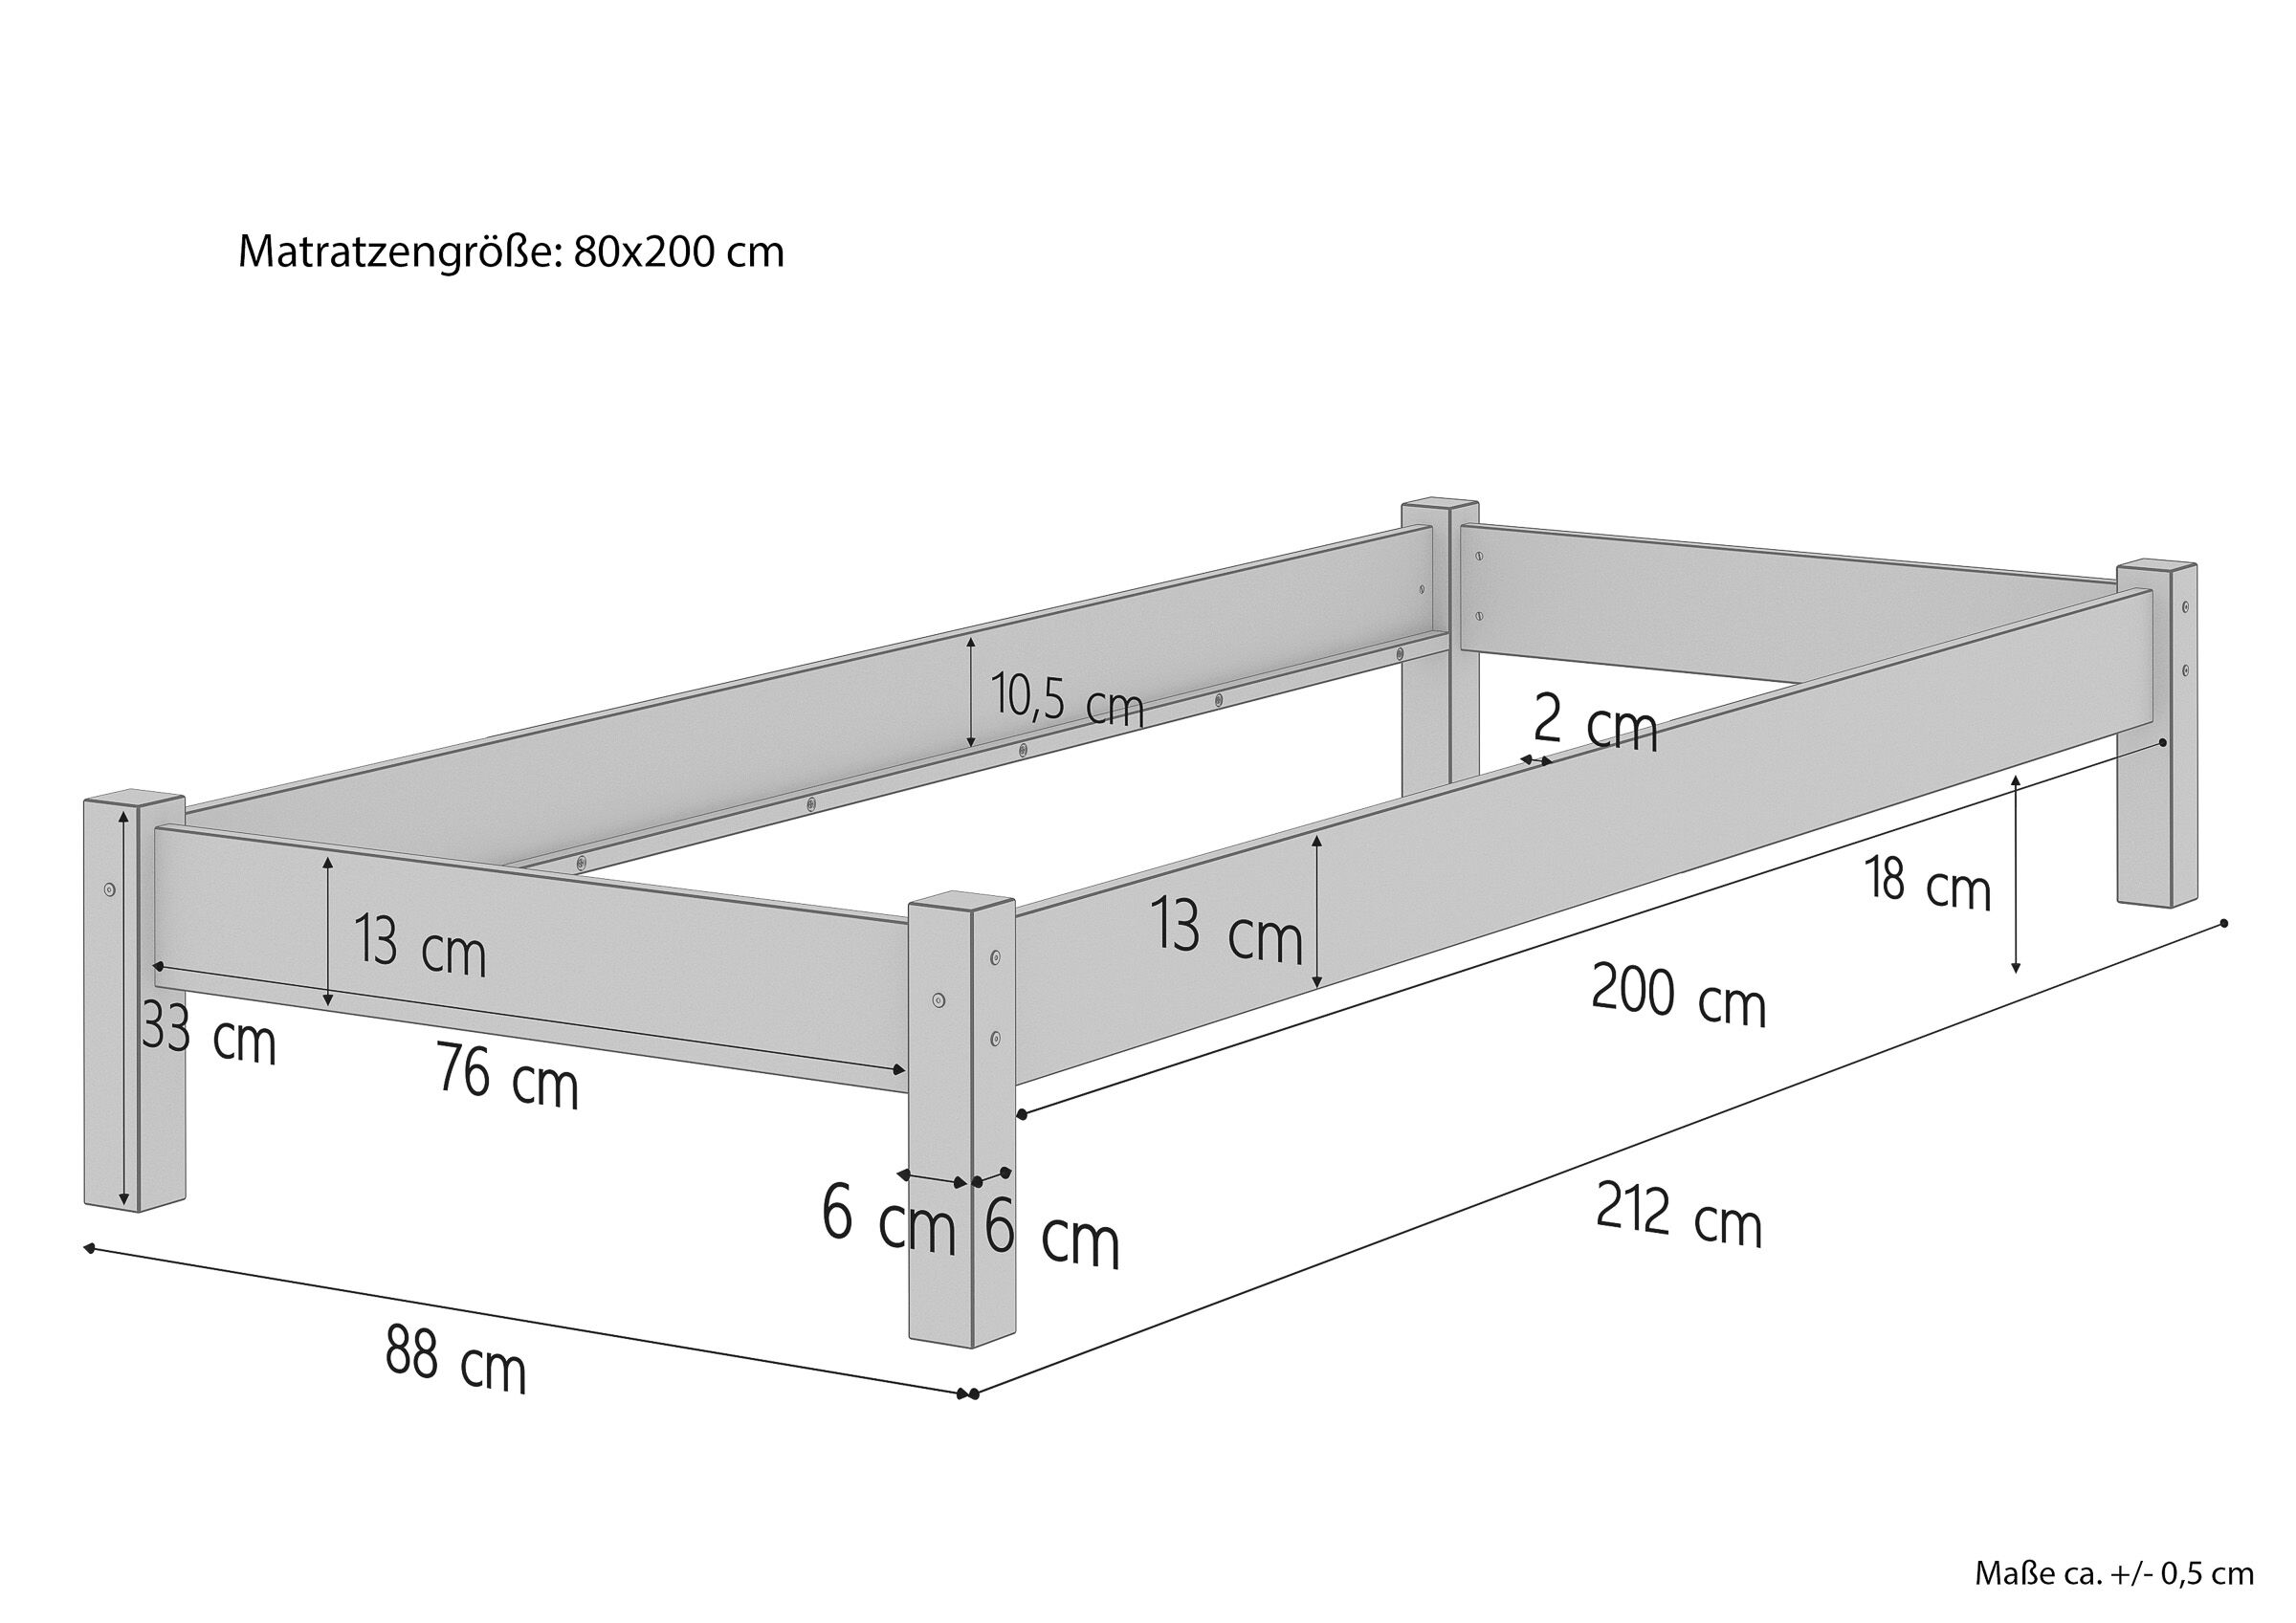 Tre varianti di solido letto una piazza futon 80x200 in Faggio massello laccato V-60.84-08